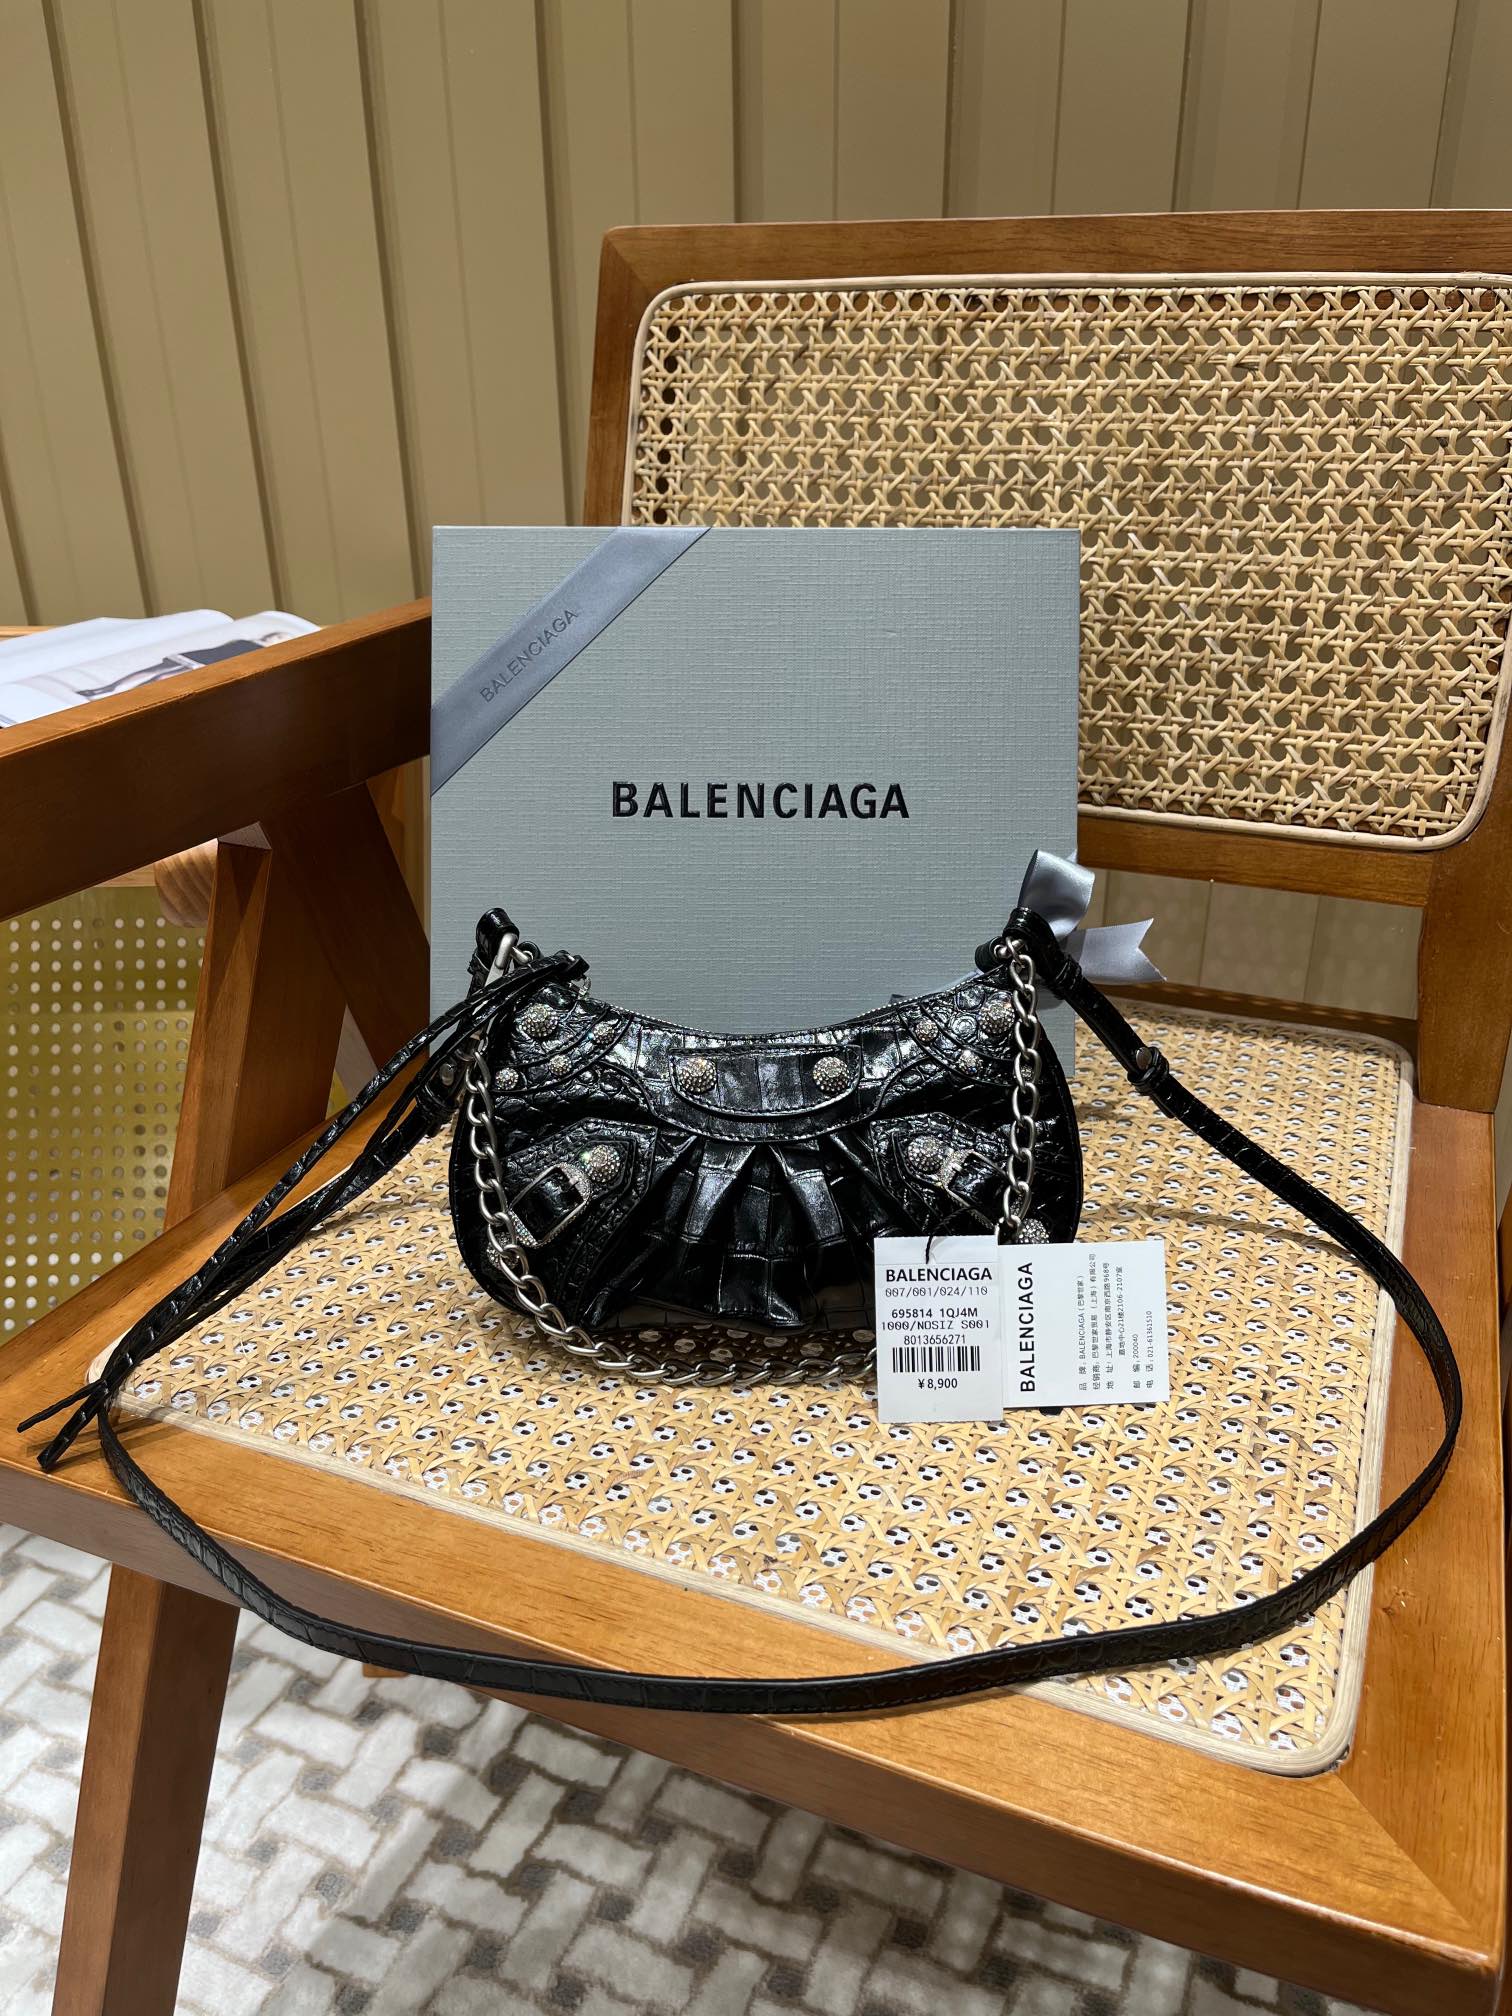 Balenciaga Le Cagole Mini 20CM 黑色鳄鱼纹月牙包 695814